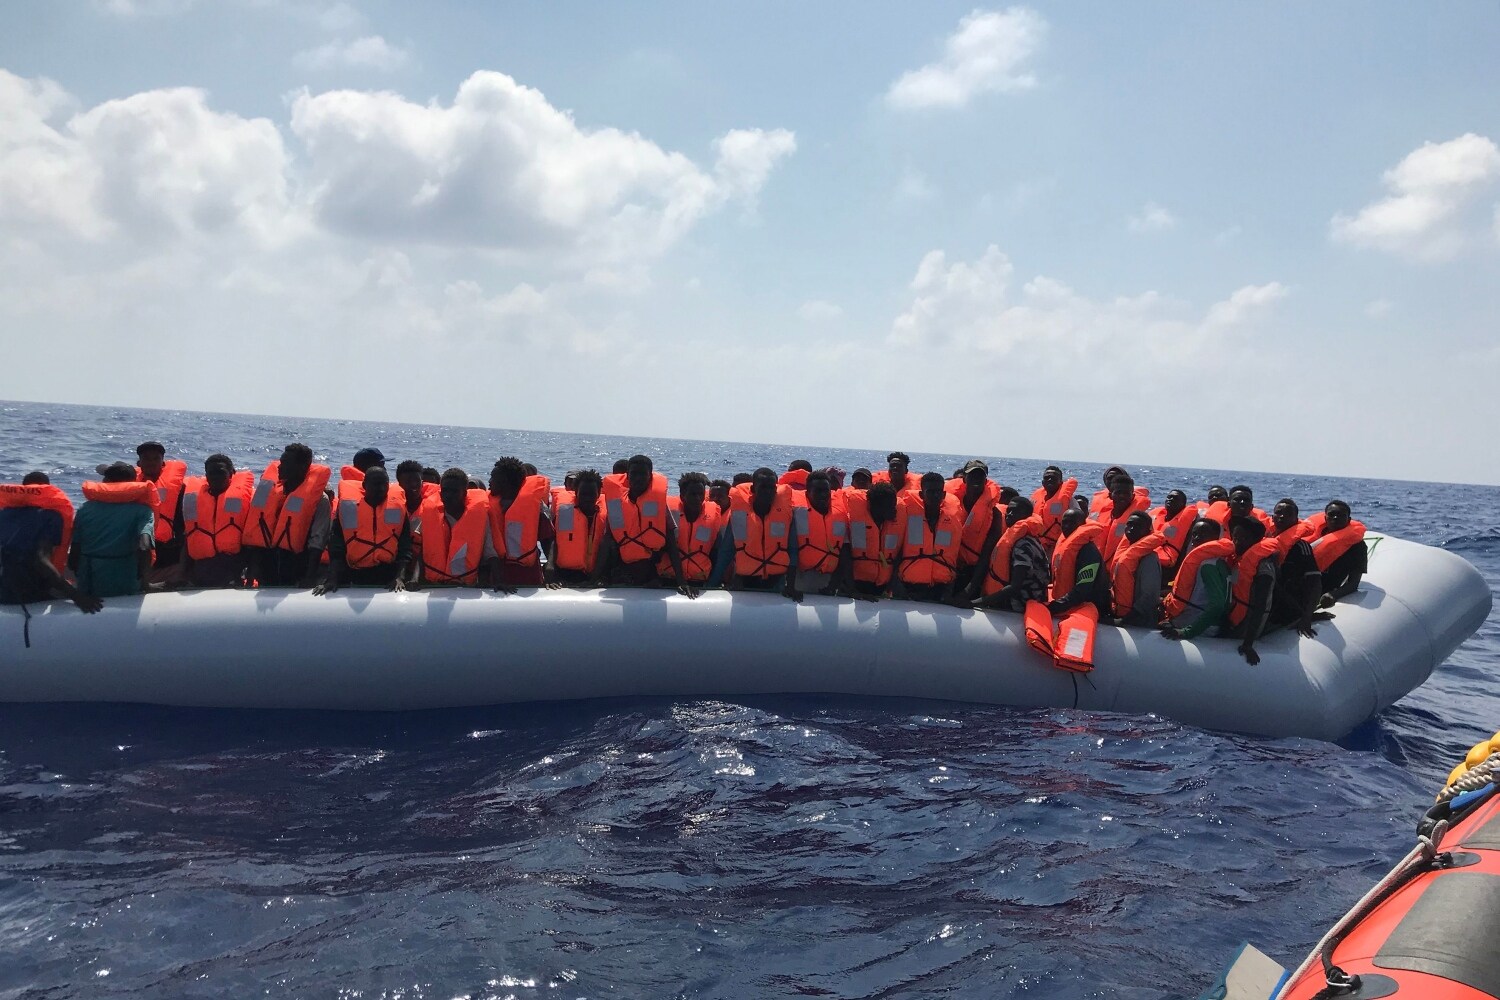 Migrantes en un bote inflable, durante la segunda operación de rescate de los miembros de la tripulación del barco de rescate 'Ocean Viking', operado por las ONG francesas SOS Mediterranee y Medecins sans Frontieres (MSF), en el Mar Mediterráneo.